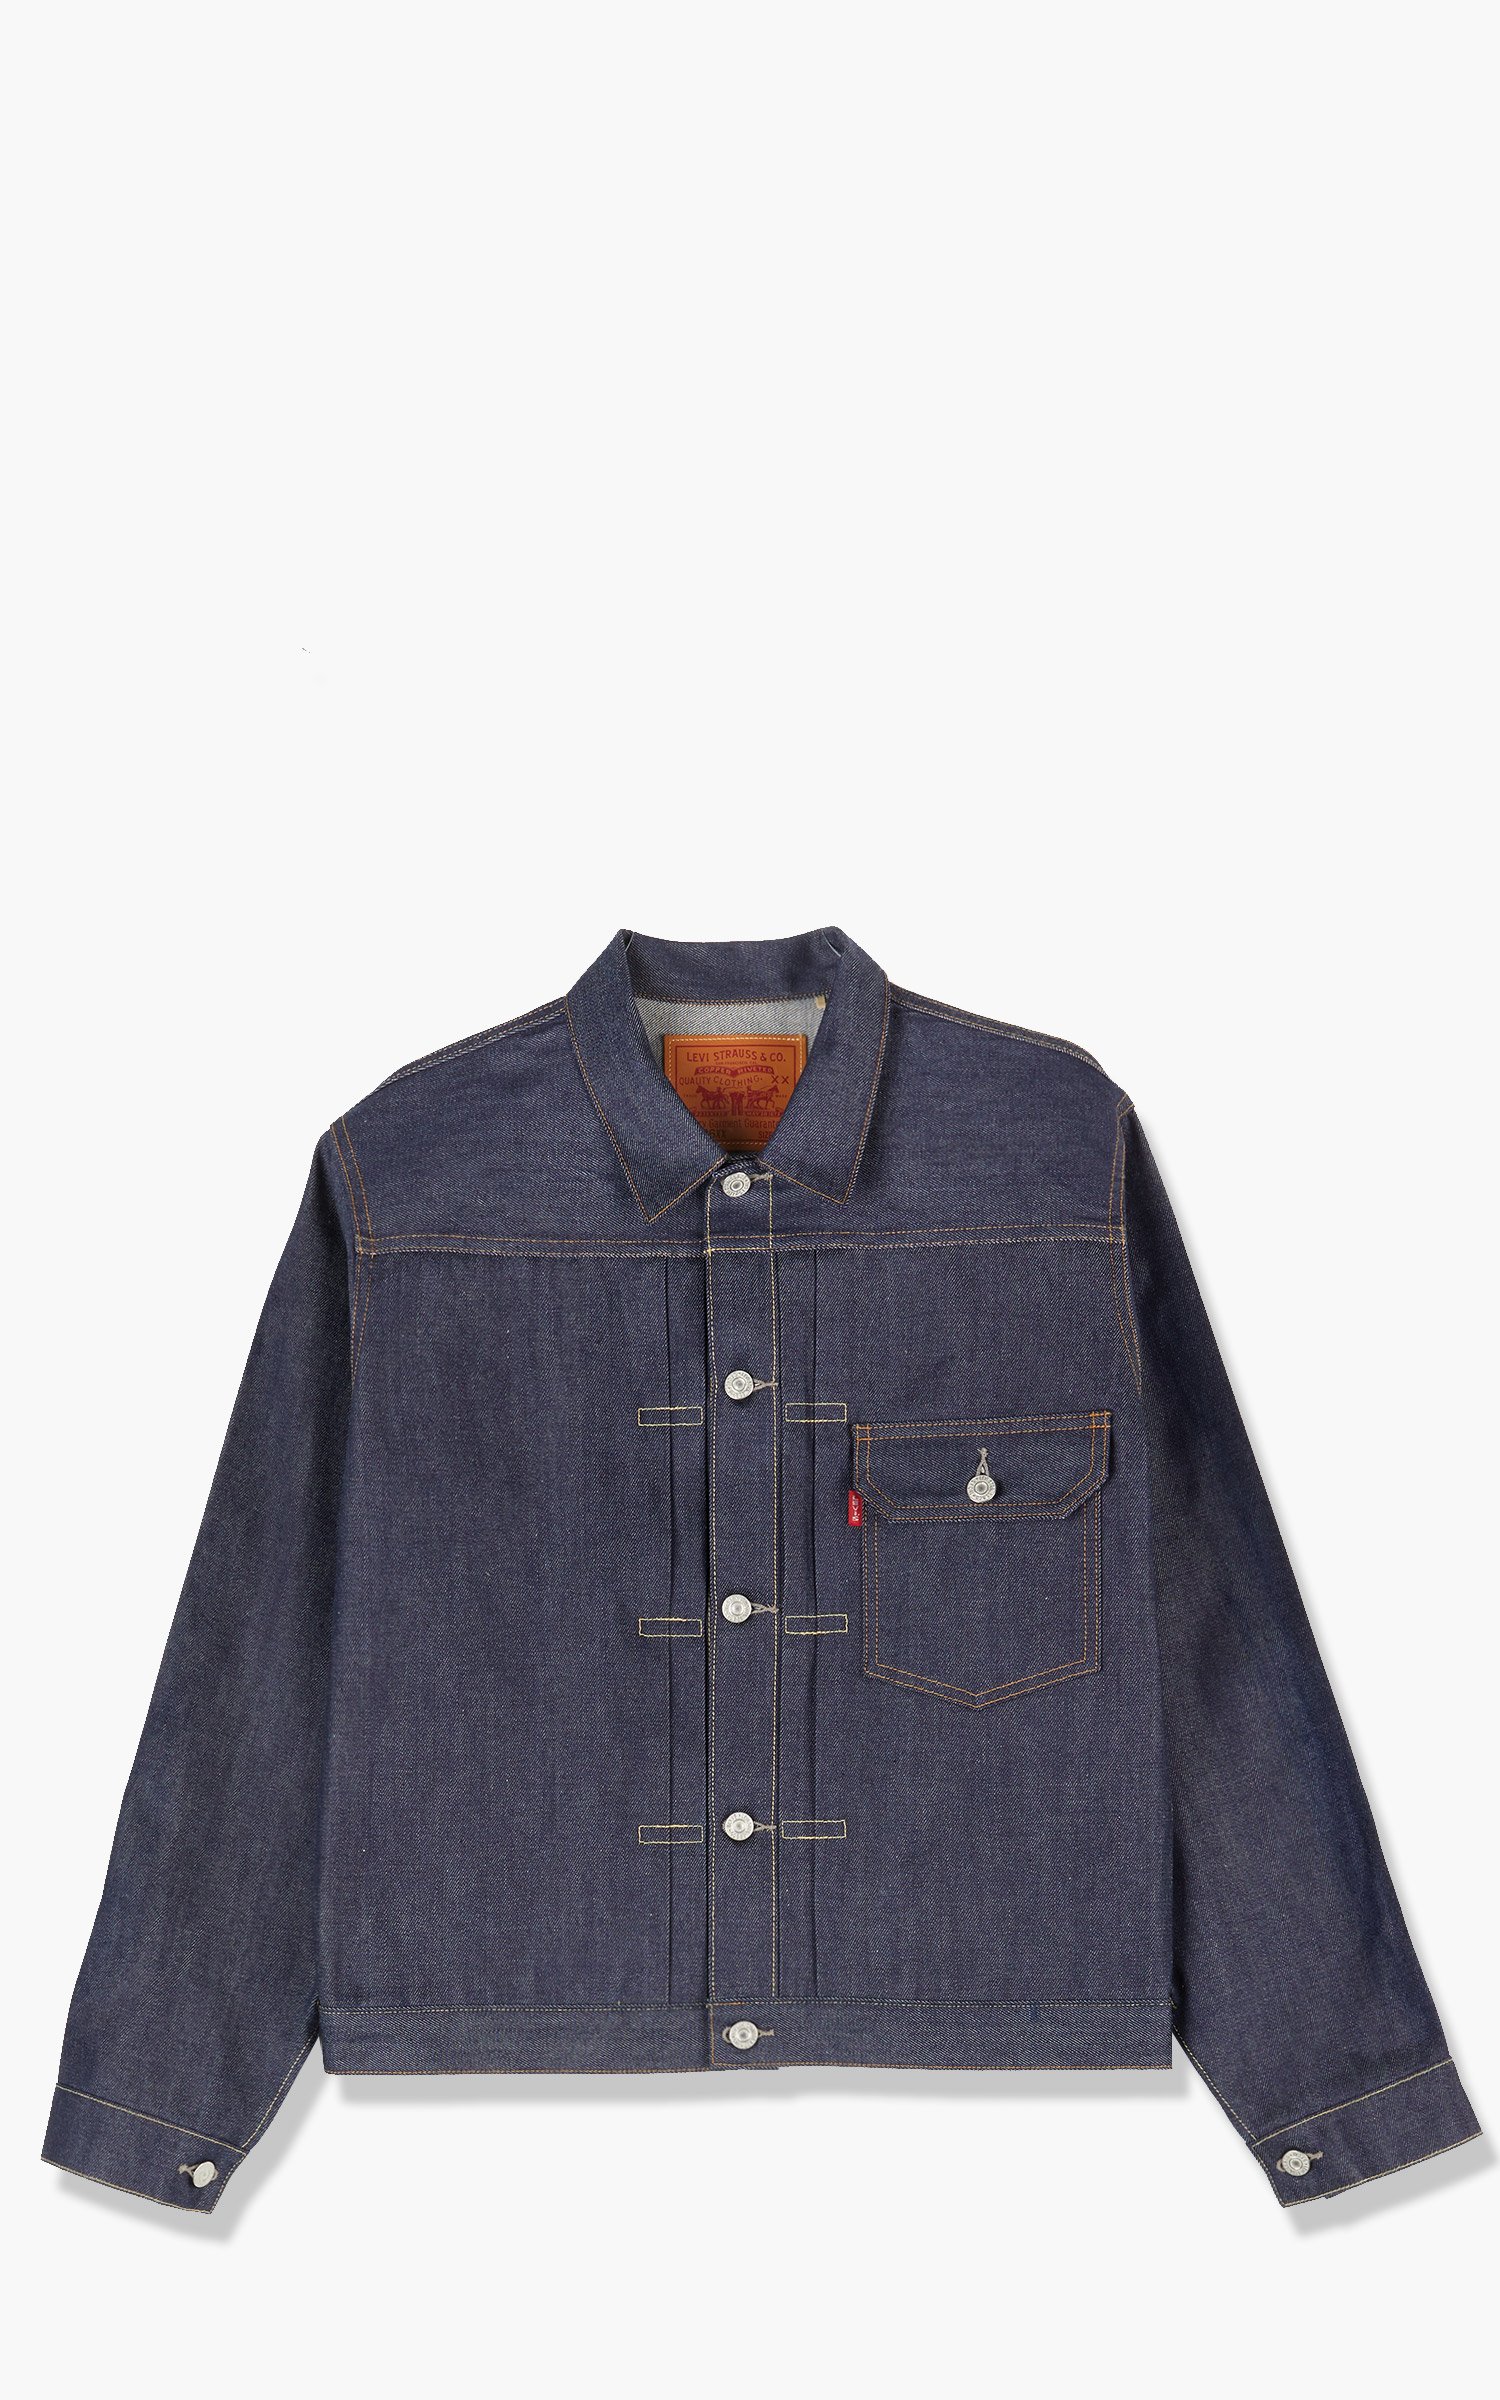 Levi's® Vintage Clothing 1936 Type I Jacket Rigid 12.5oz